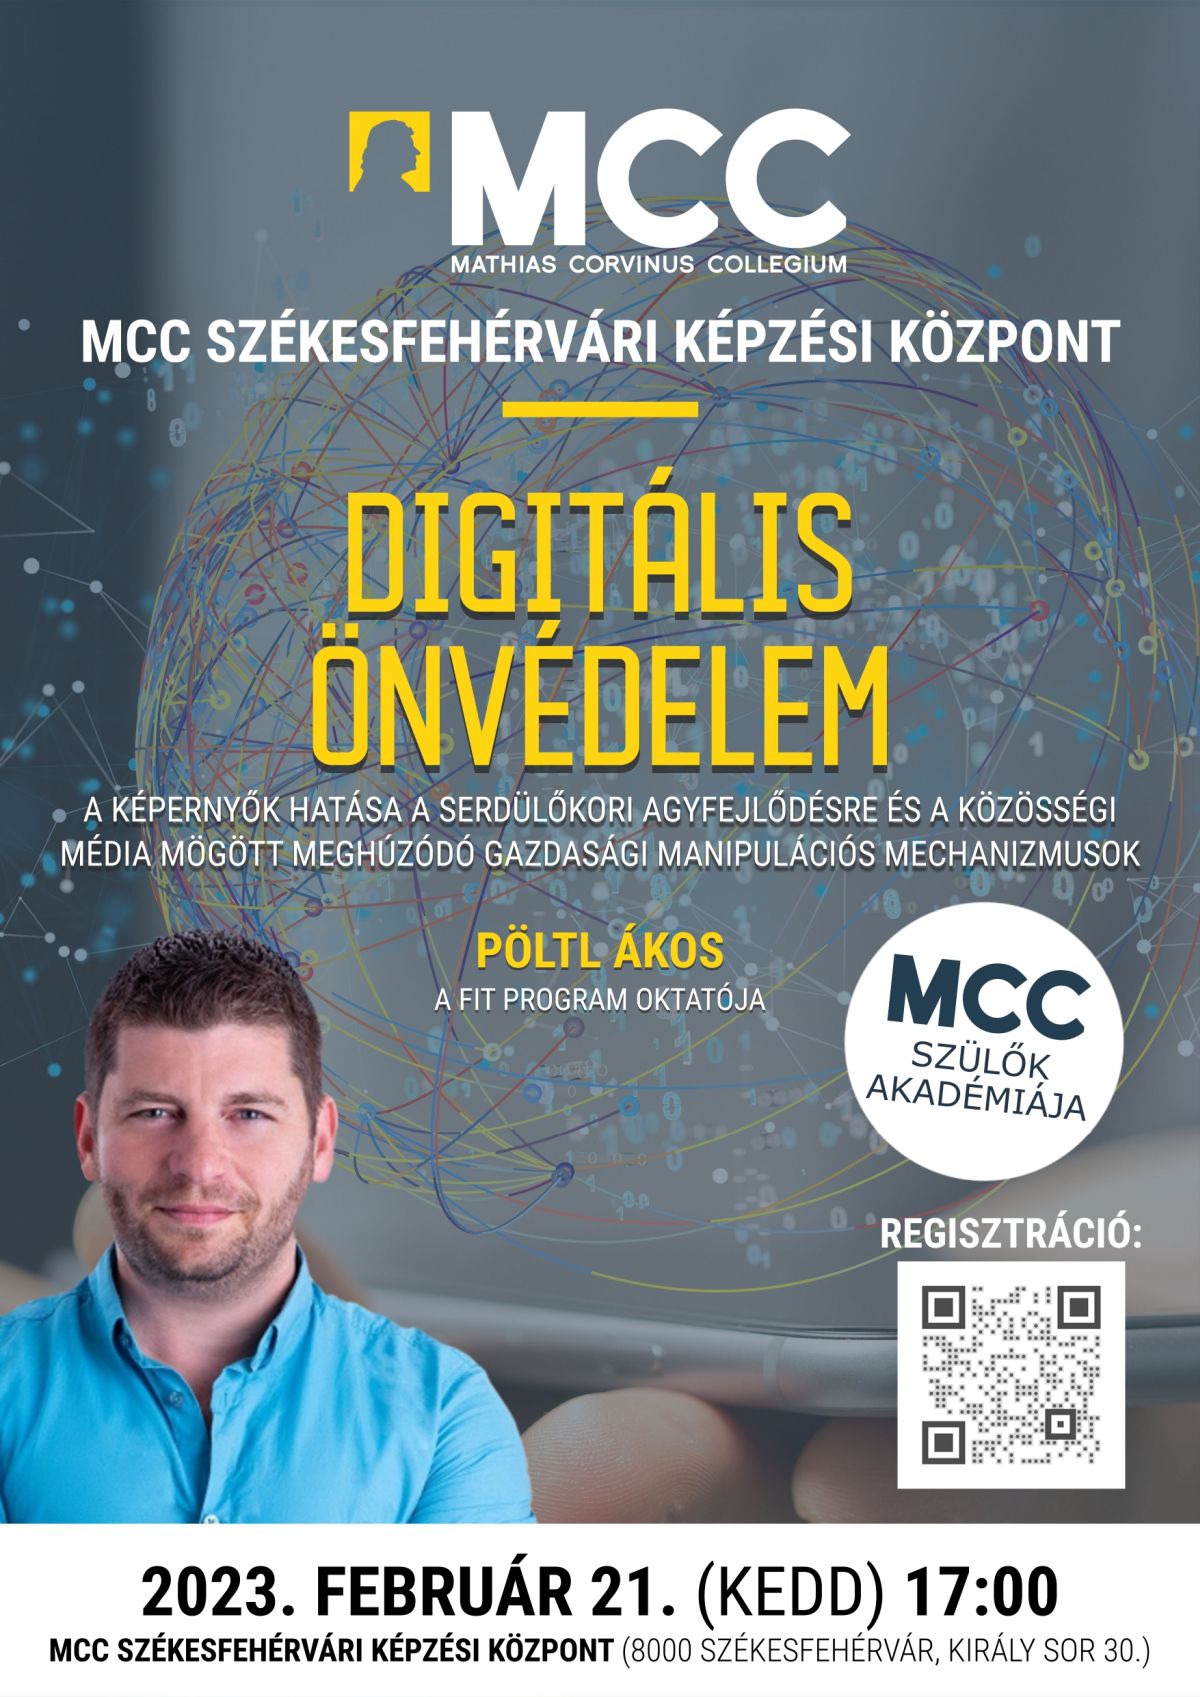 A digitális önvédelem lesz a téma az MCC legújabb előadásán